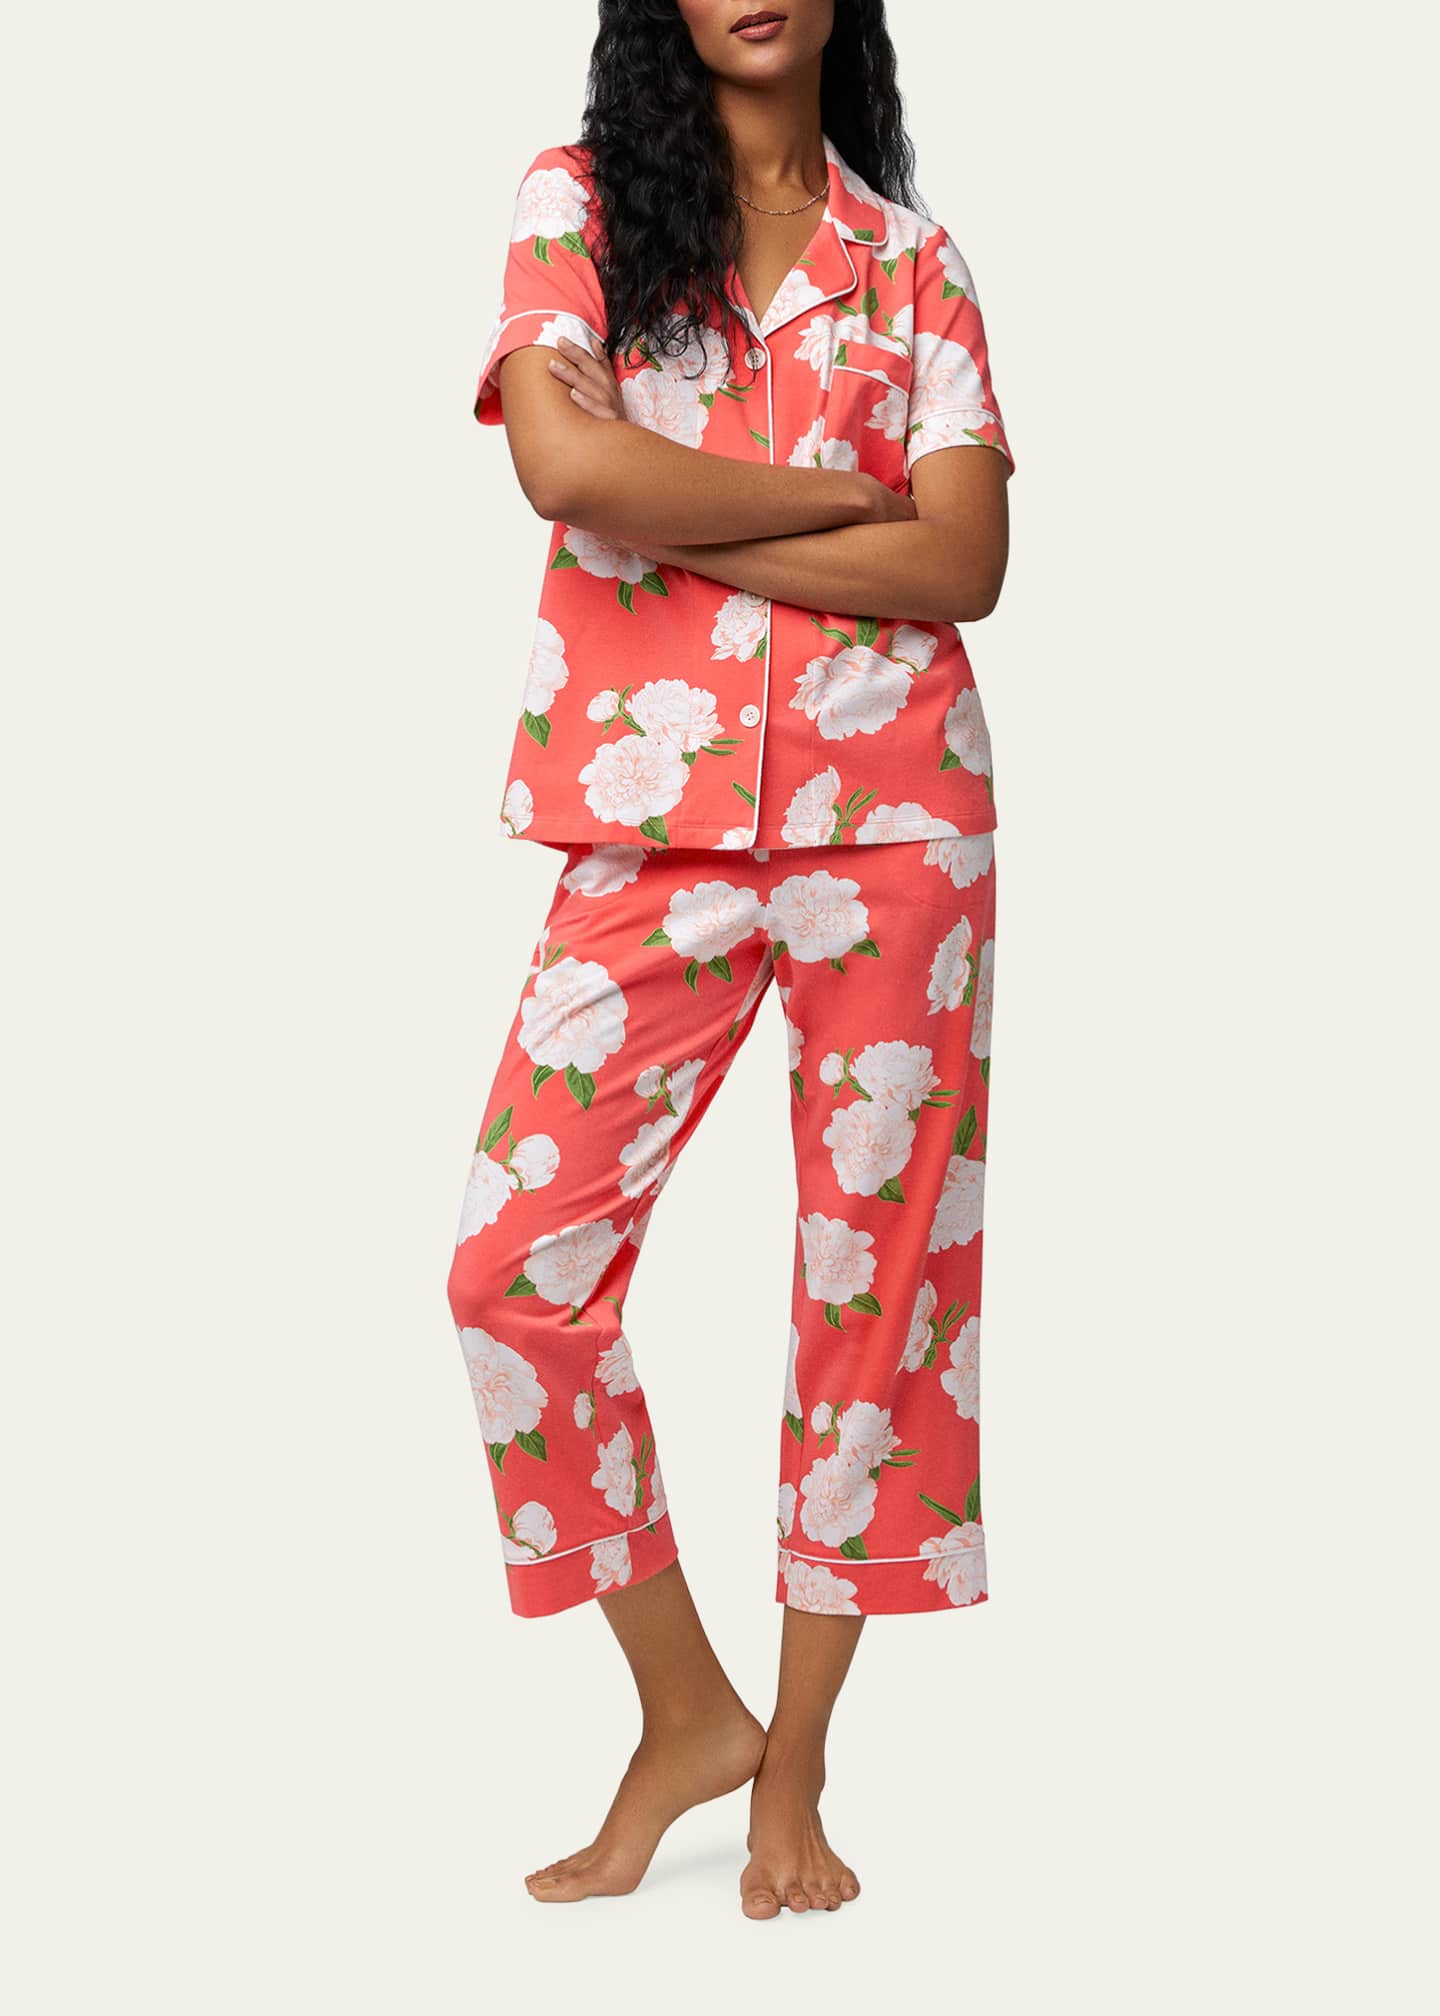 Women's BedHead Pajamas Pajama Sets